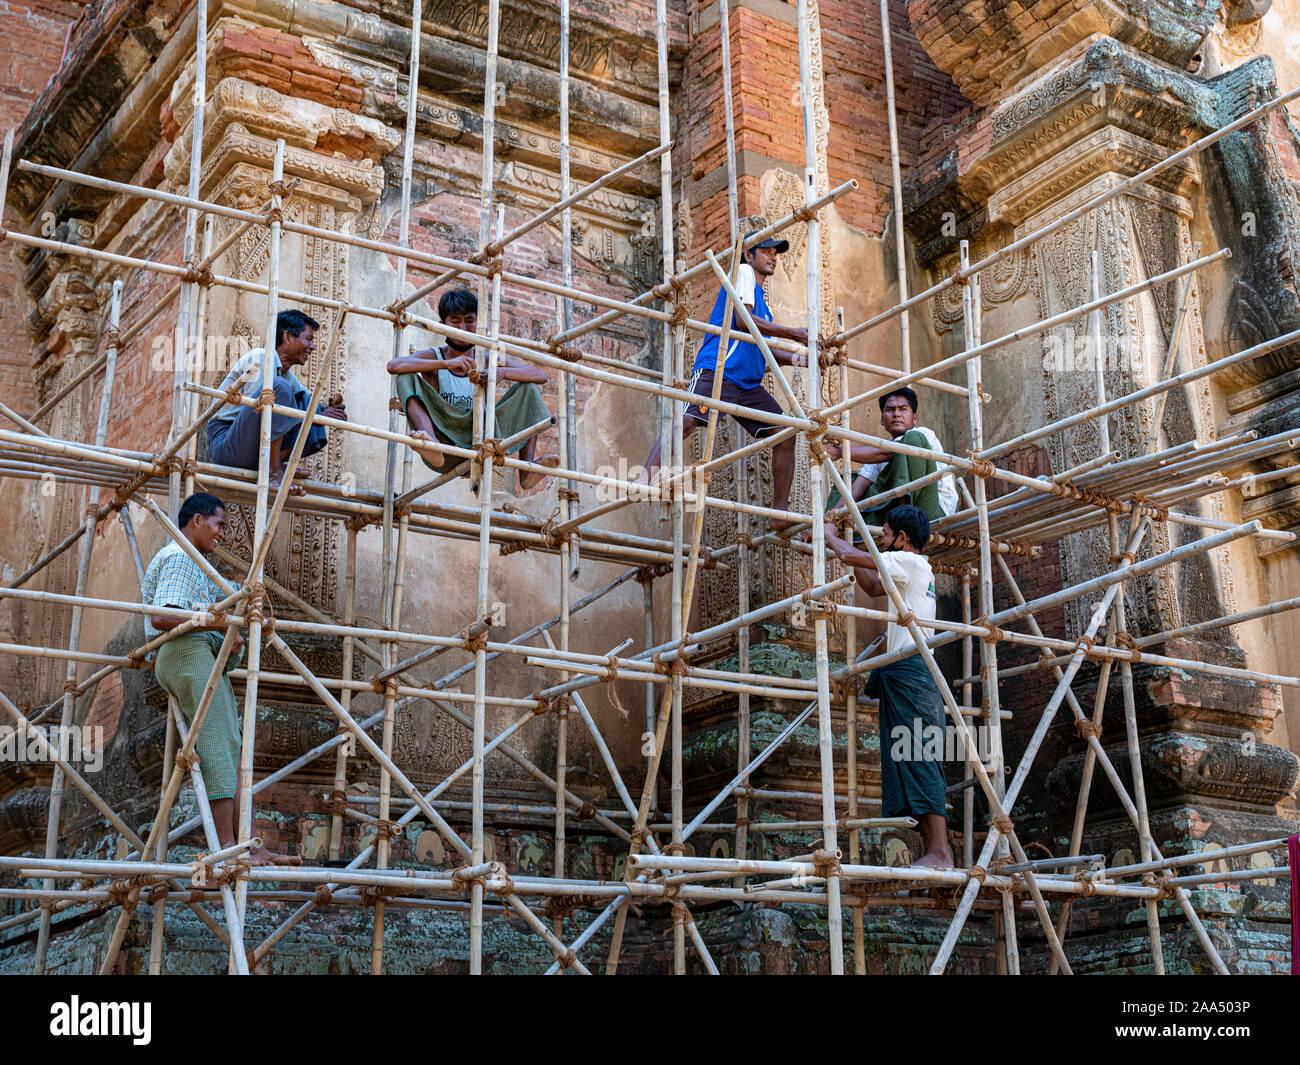 Lavoratori costruire il ponteggio necessaria per il ripristino della facciata di un antico tempio buddista nella zona archeologica di Bagan, Myanmar (Birmania). Foto Stock